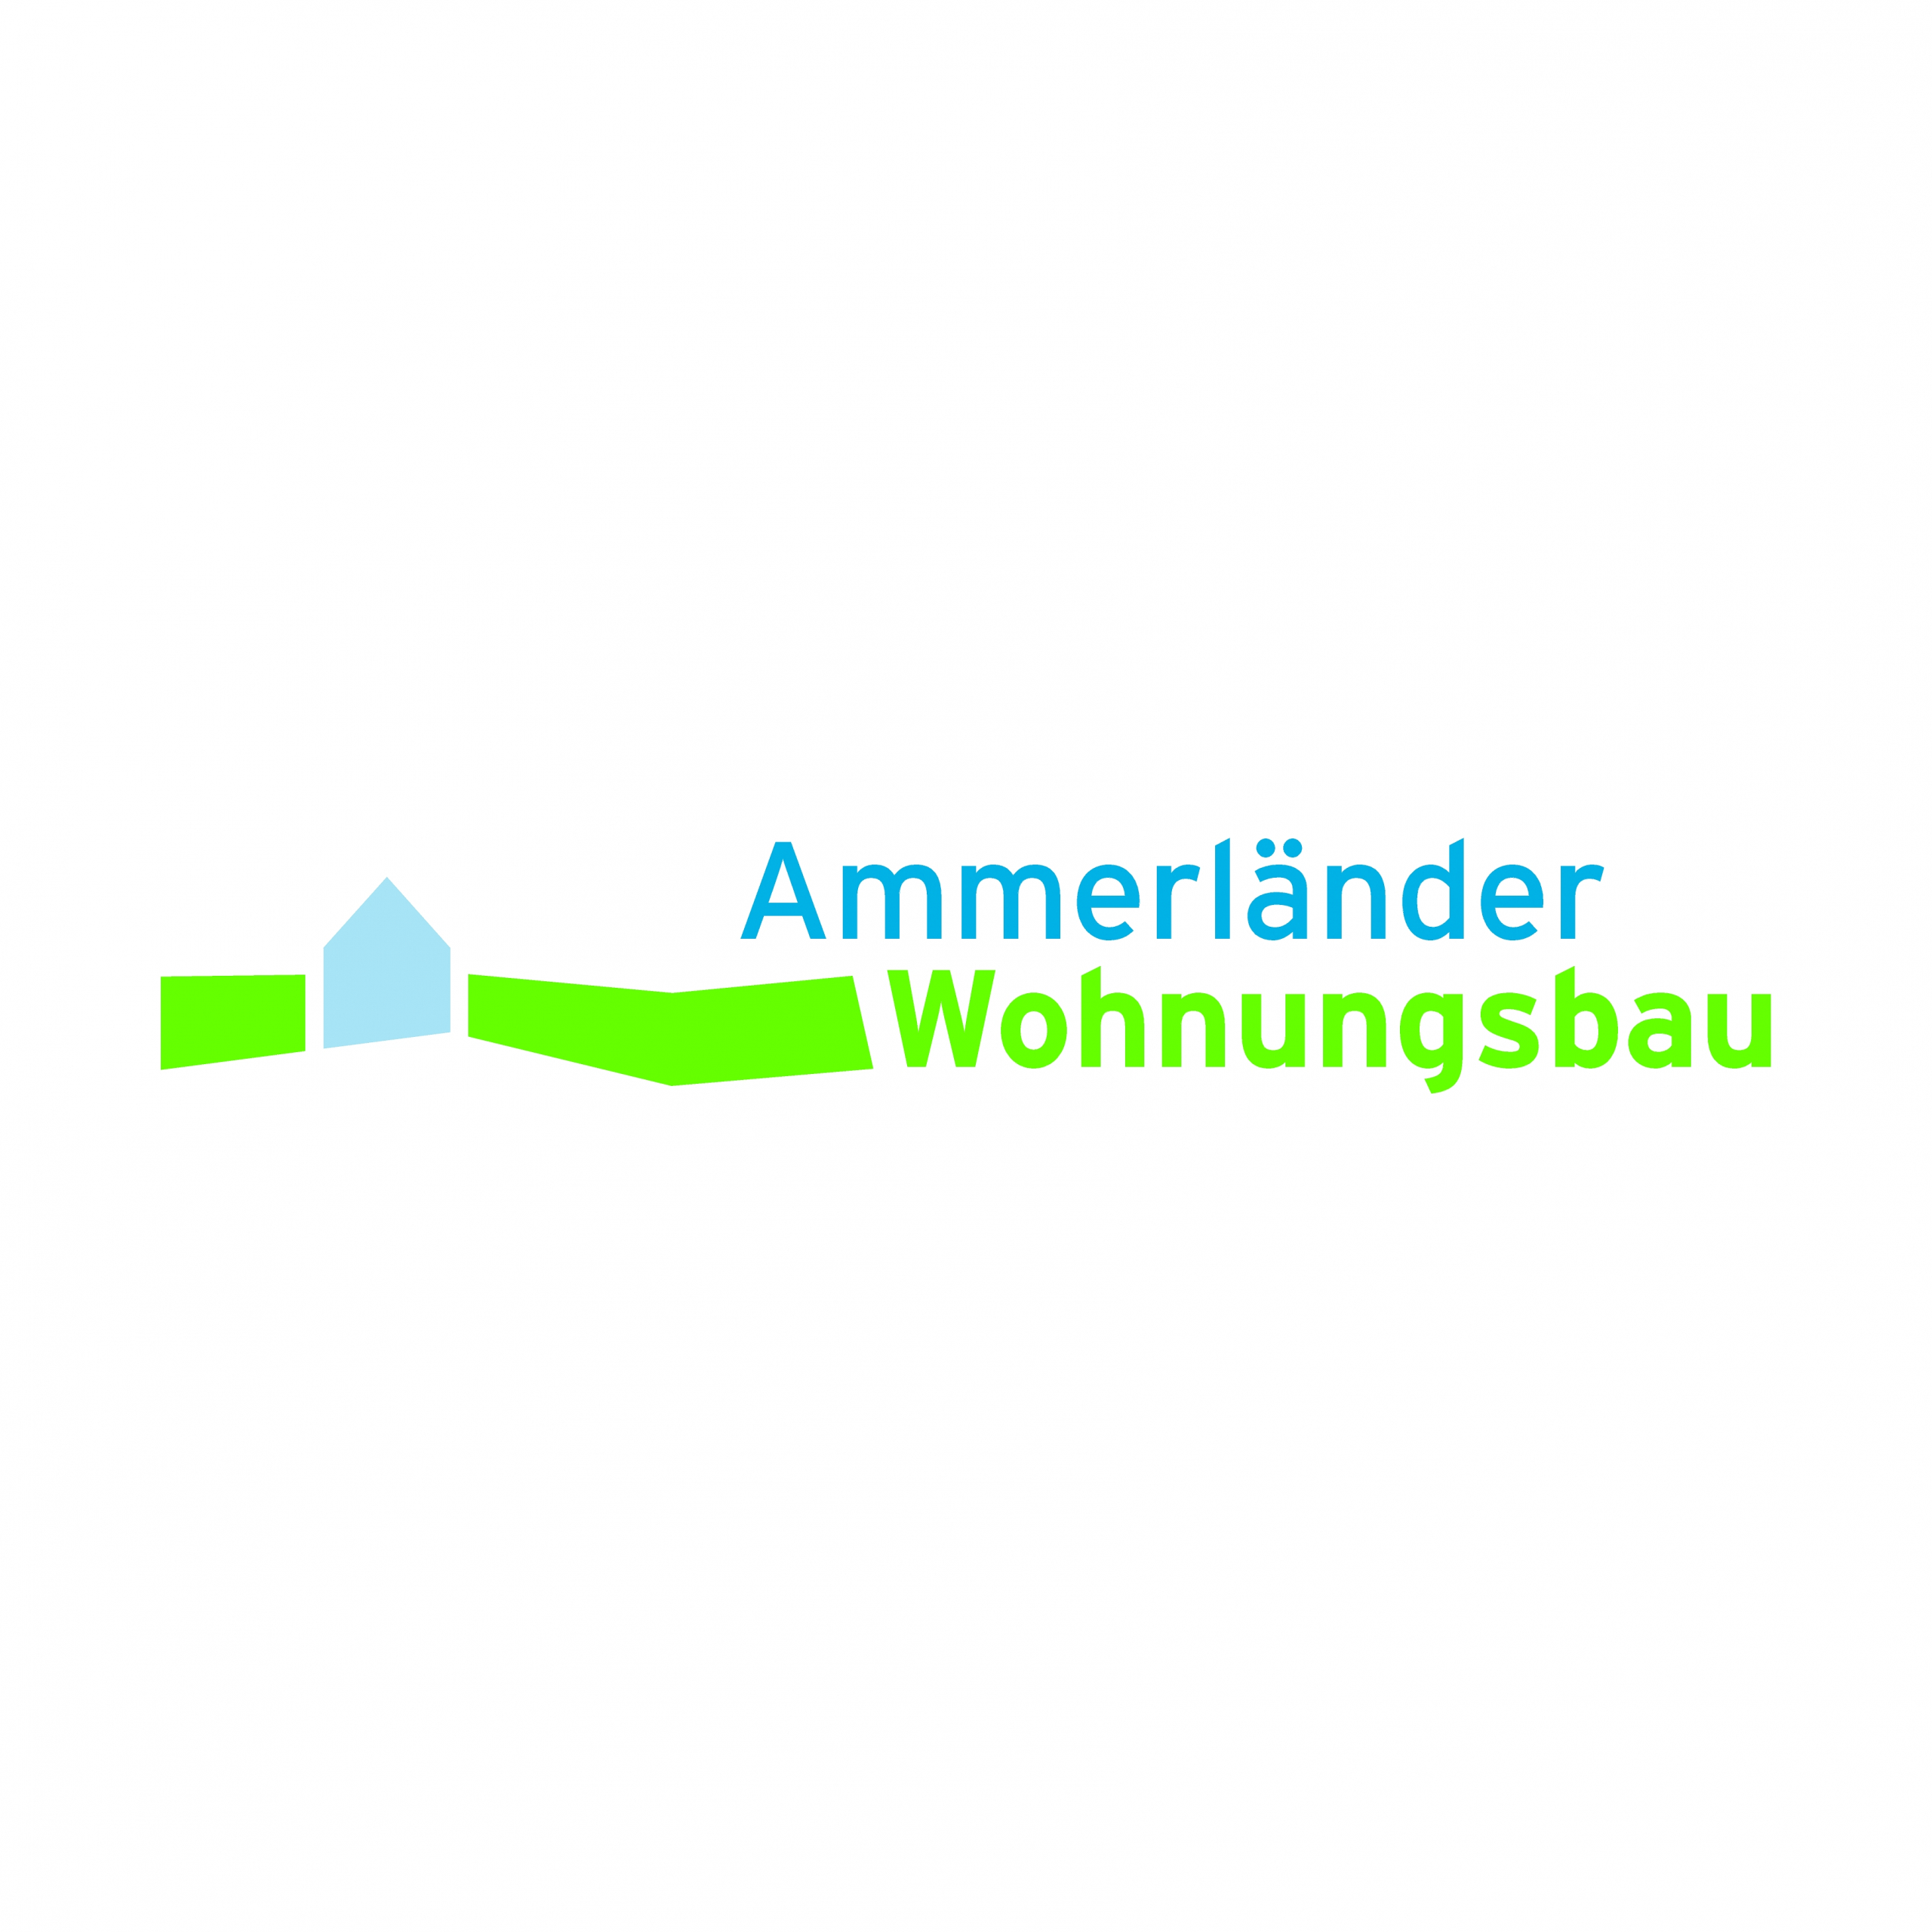 Ammerlaender-Wohnungsbau-logo